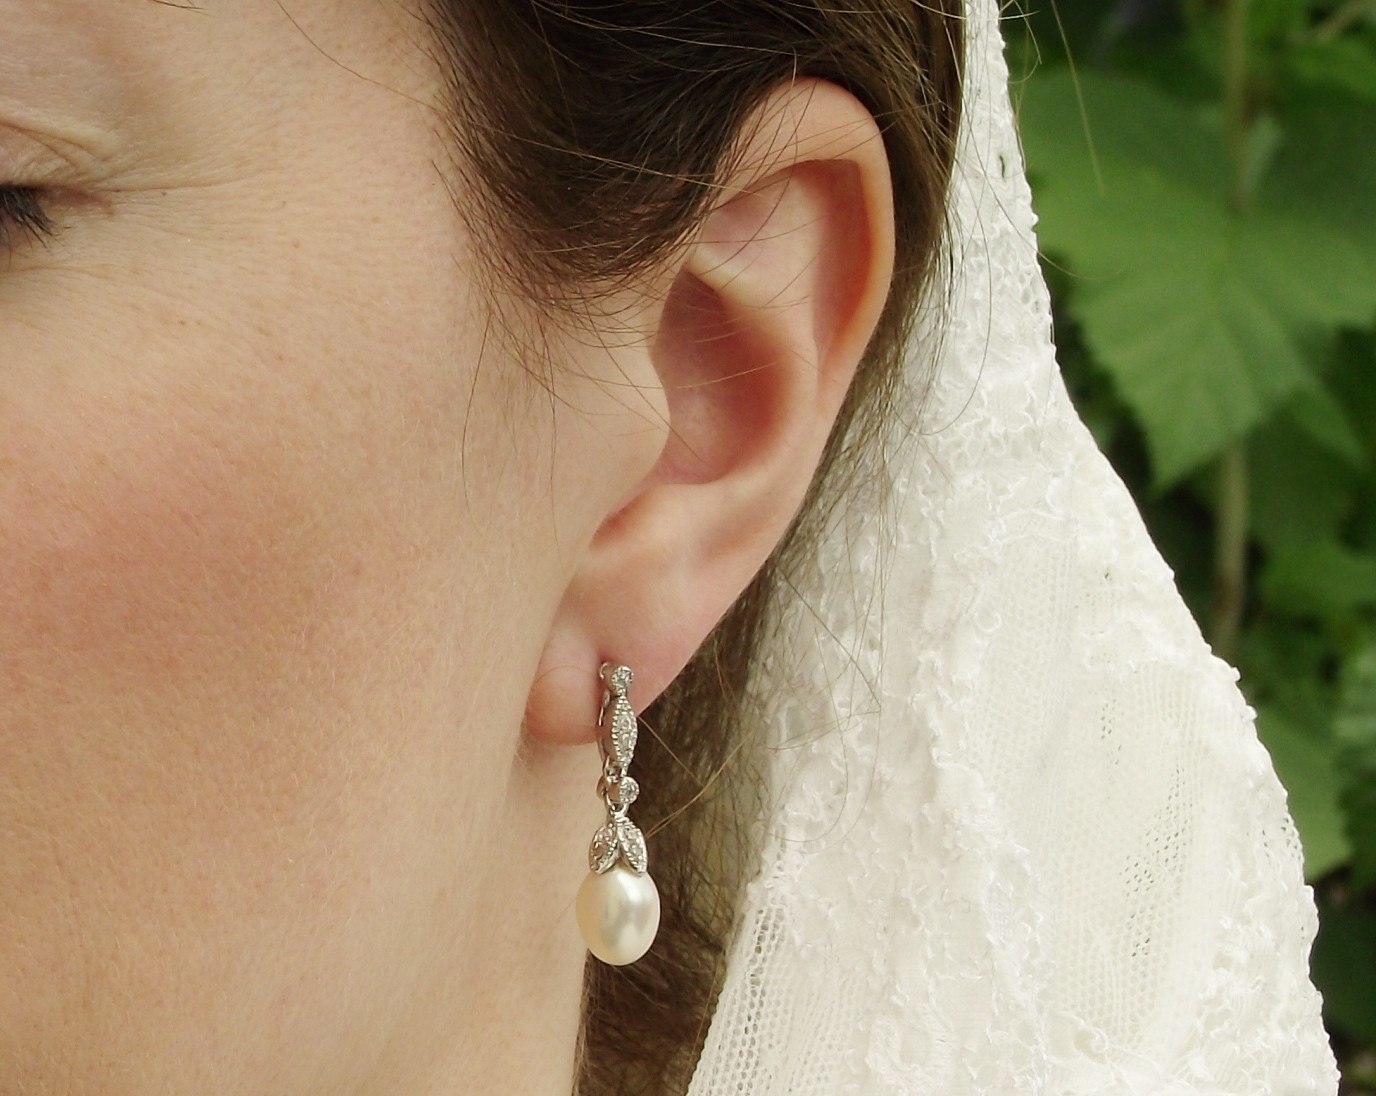 گوشواره طلای عروس بسیار مهم است که با یقه لباس عروس هماهنگ باشد